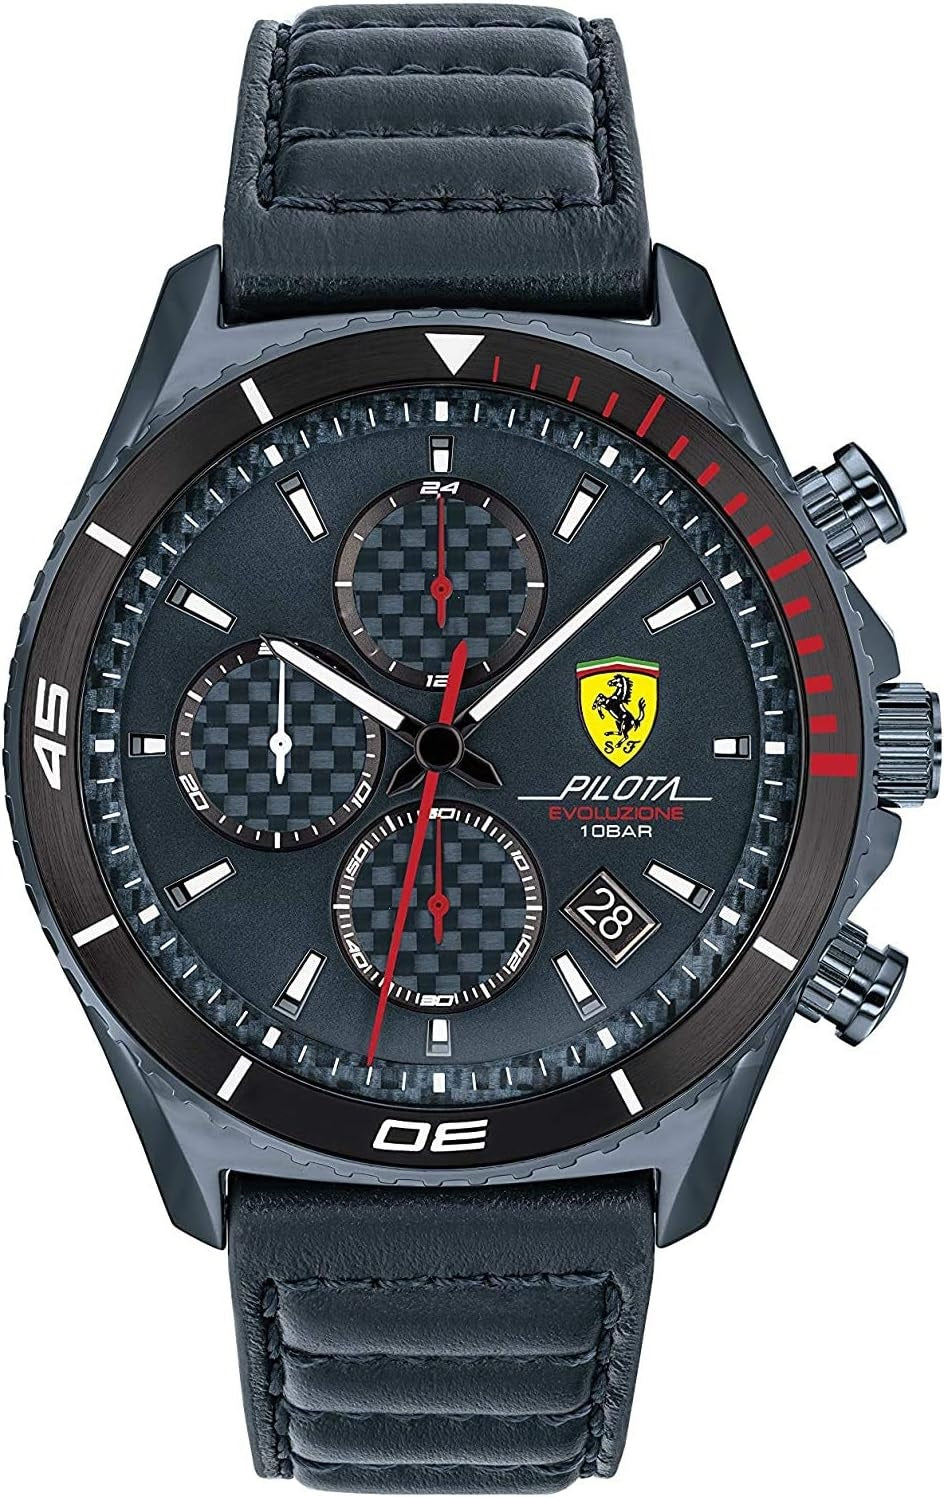 Scuderia Ferrari Pilota Dial Watch 44mm / Quartz / 5ATM / Leather Blu